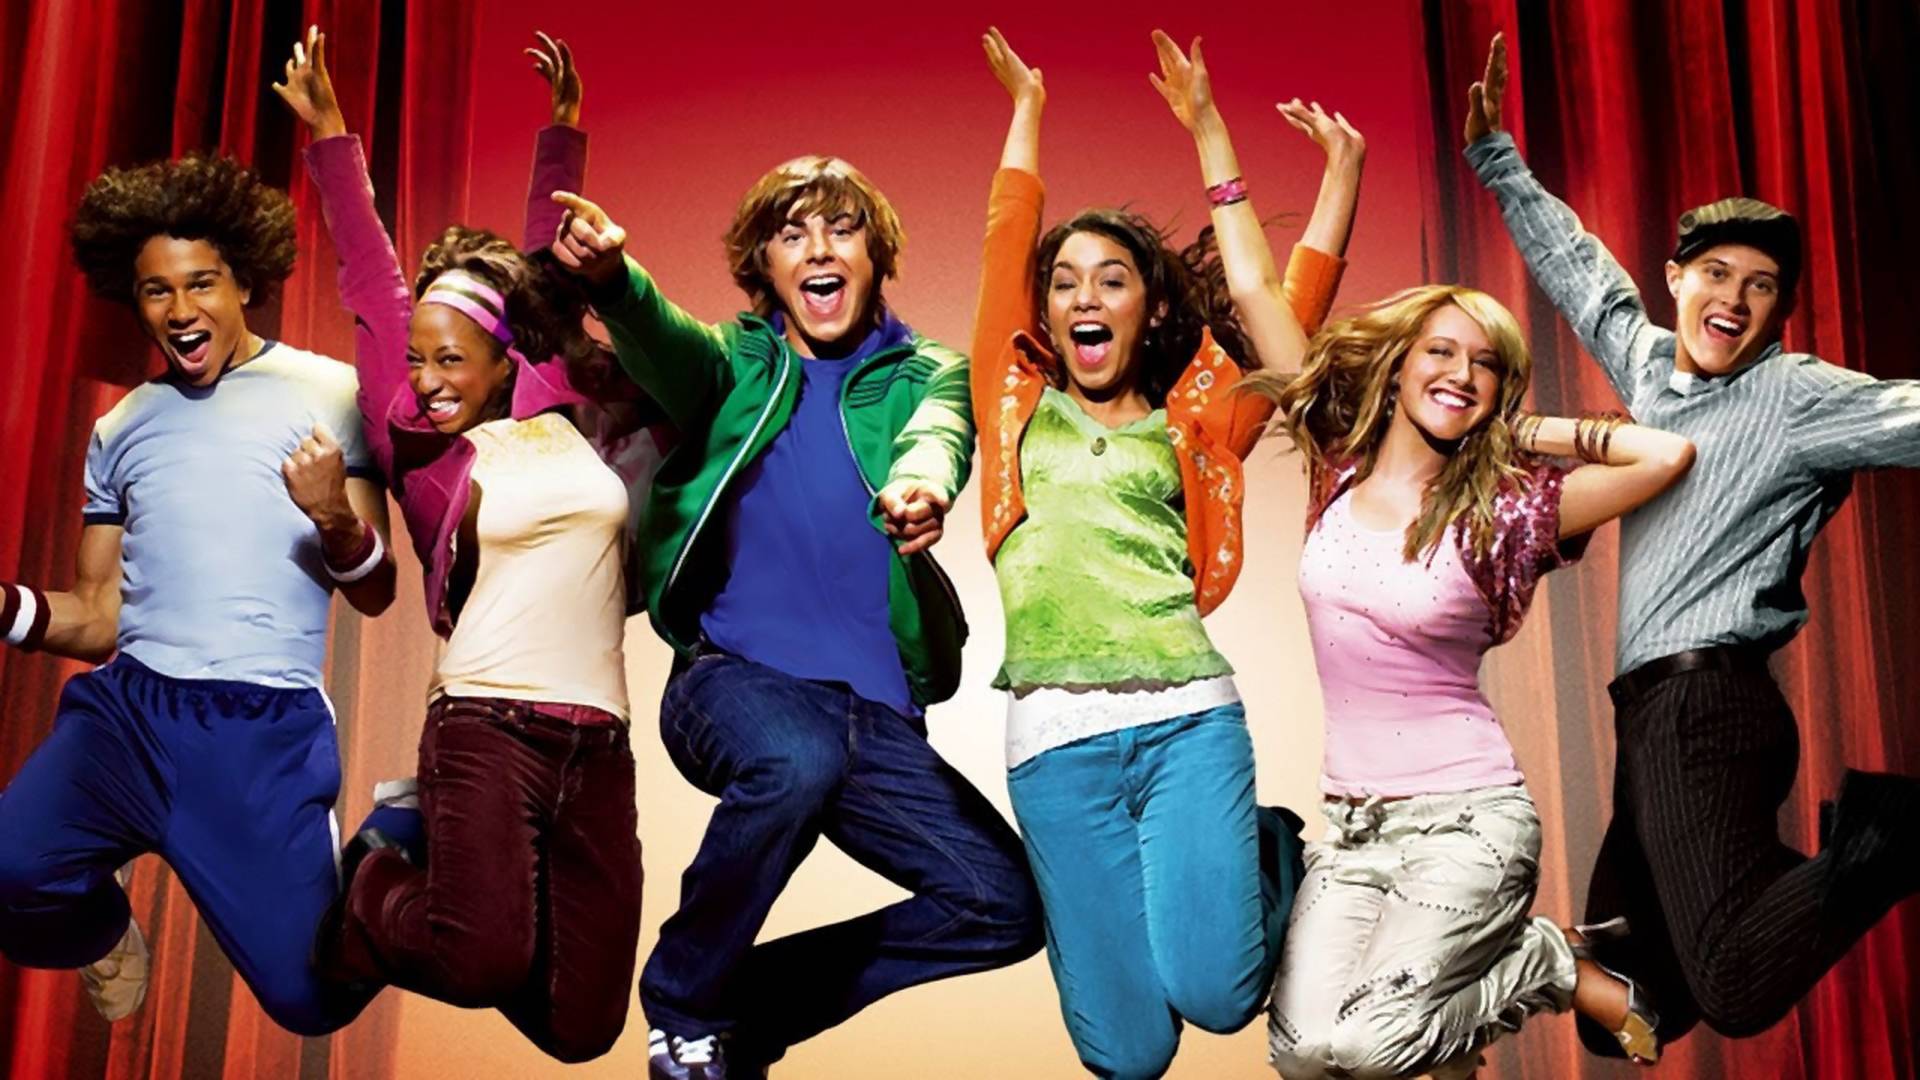 Jön a High School Musical 4? Zac Efron szívesen visszatérne a filmsorozatba